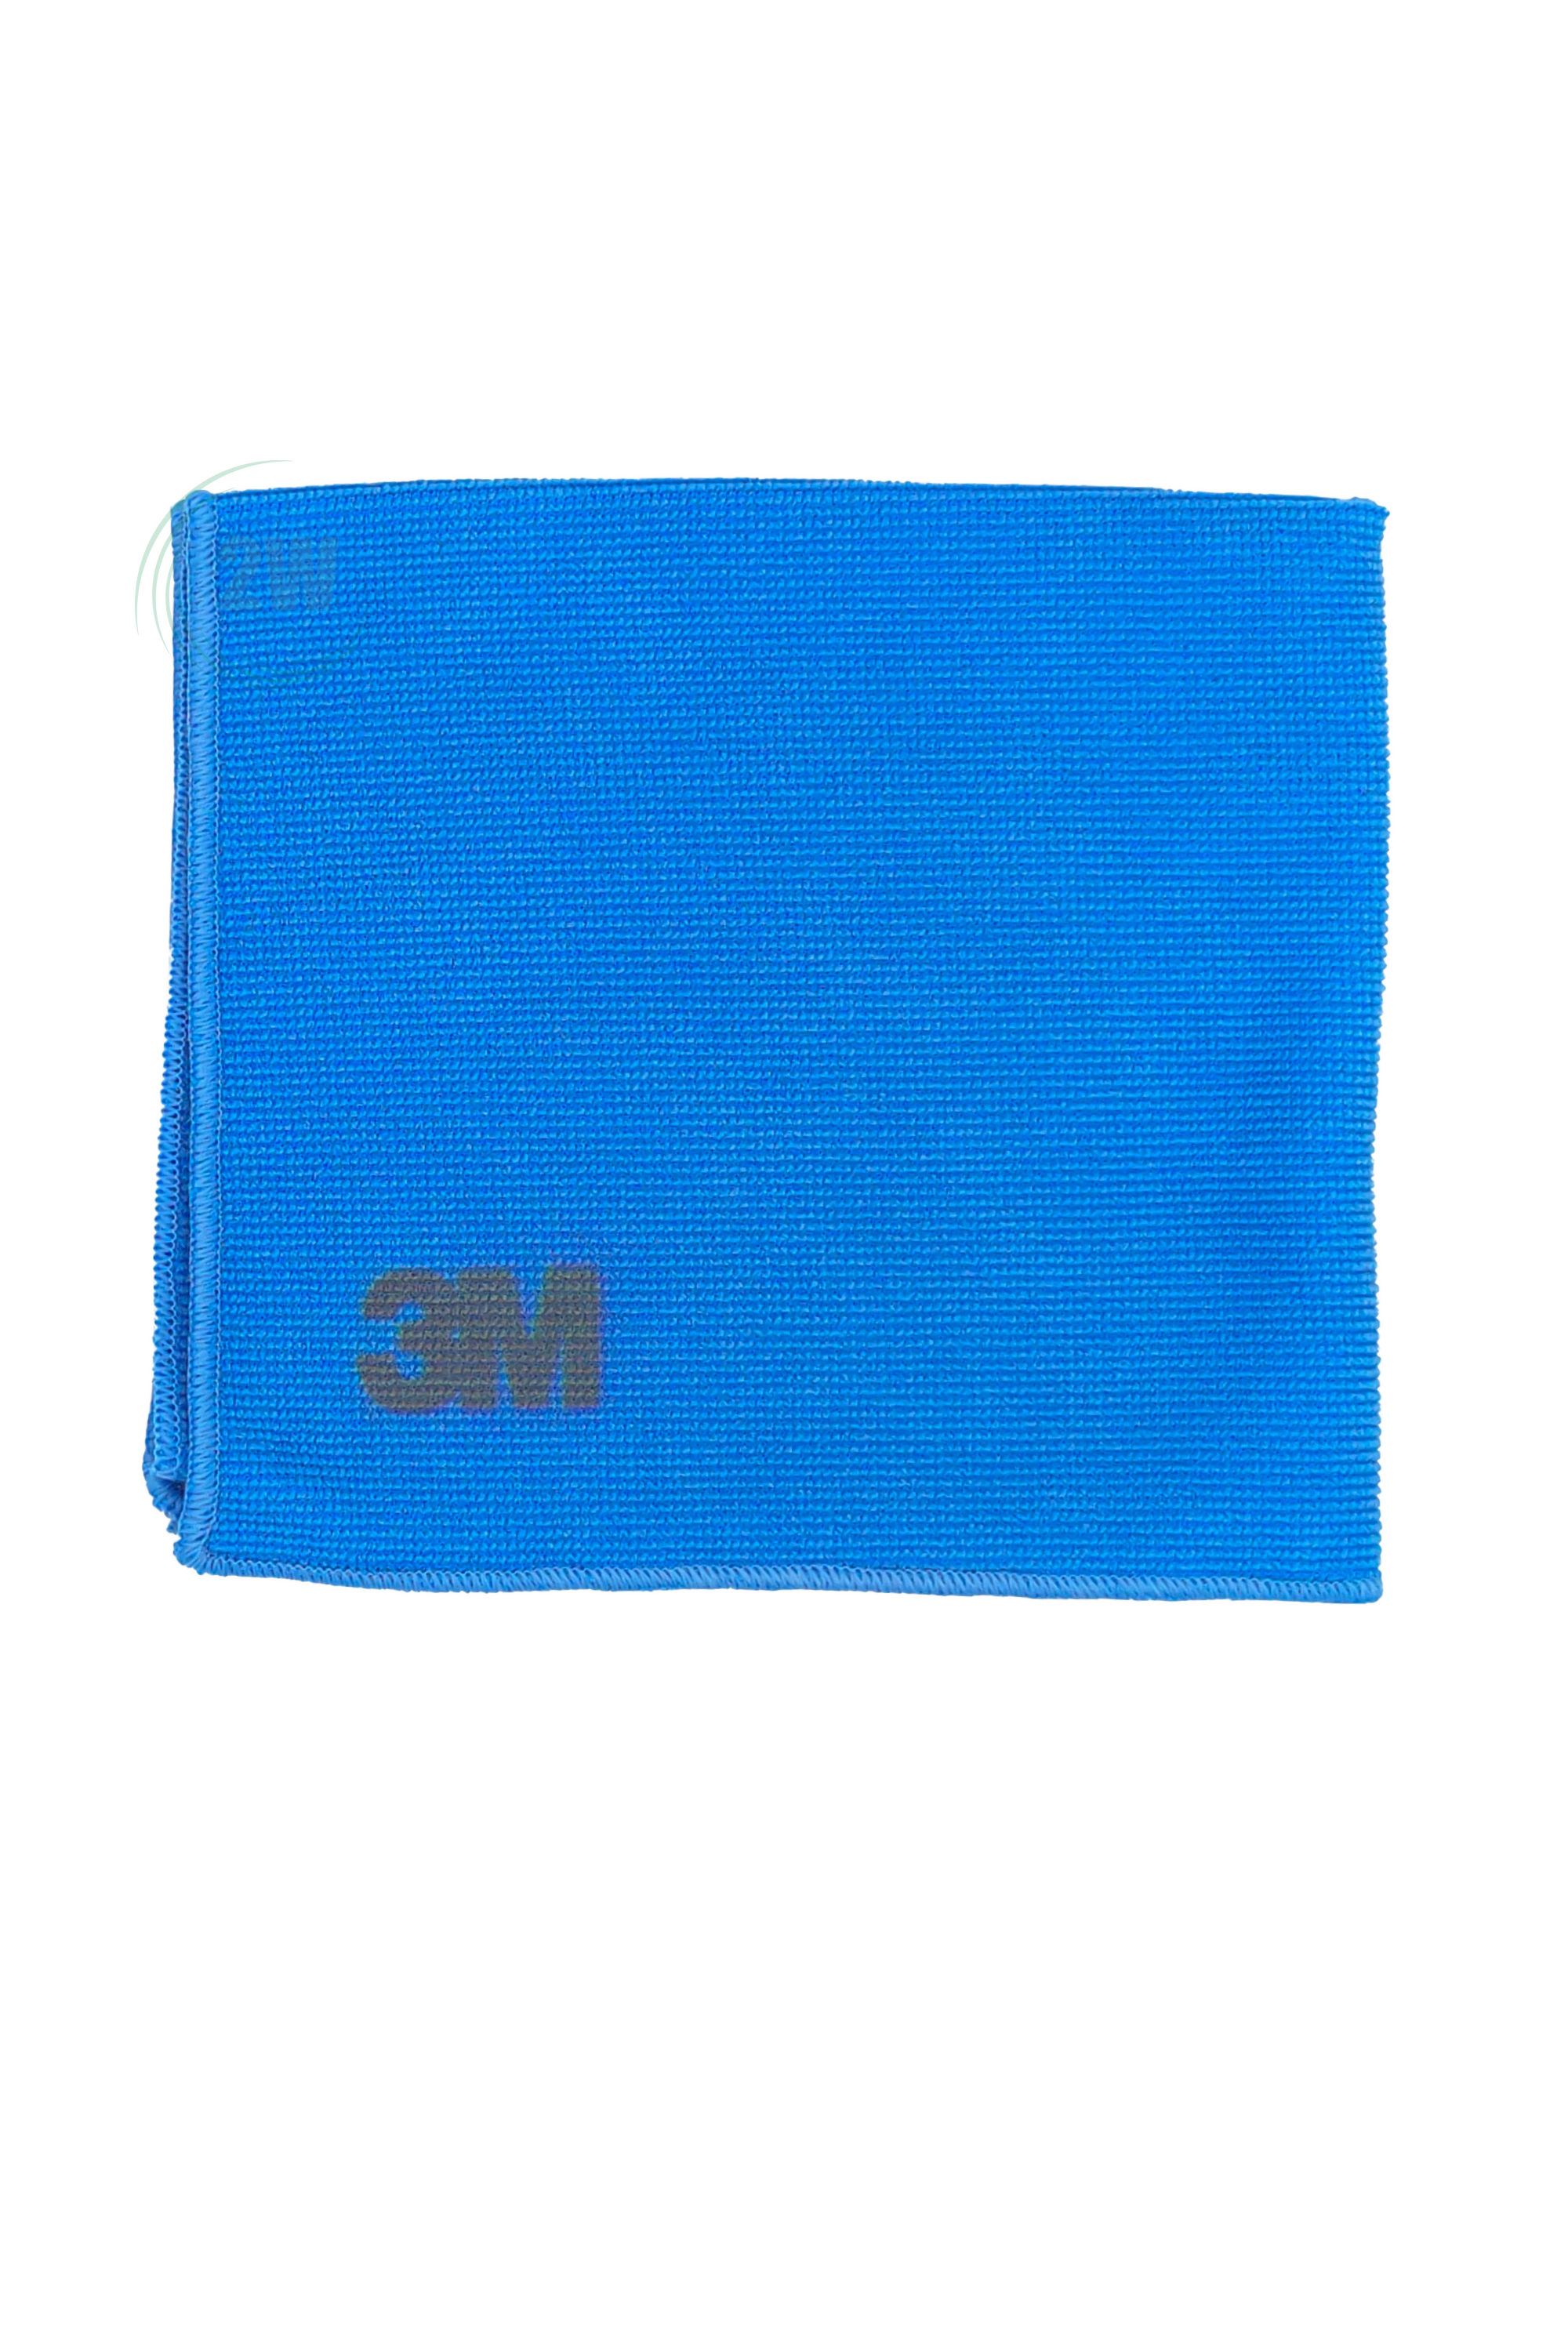 3M 2011 Scotch-Brite Mikrofaser Reinigungstuch 36 cm x 32 cm blau